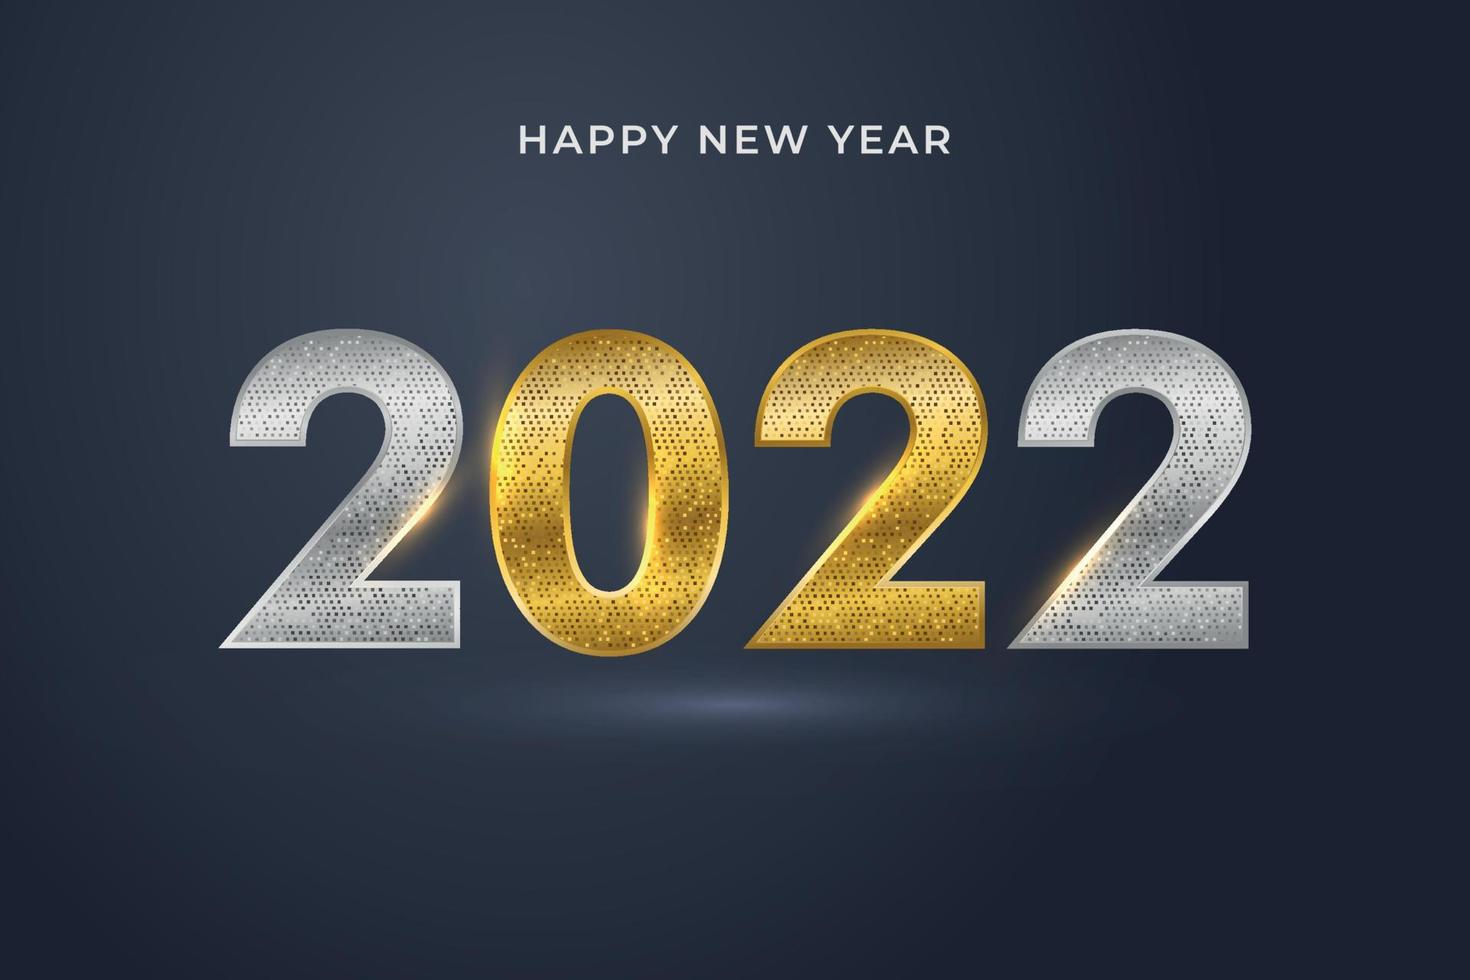 felice anno nuovo 2022. numeri d'oro e particelle d'oro con coriandoli su sfondo blu scuro. disegno di biglietto di auguri per le vacanze. vettore